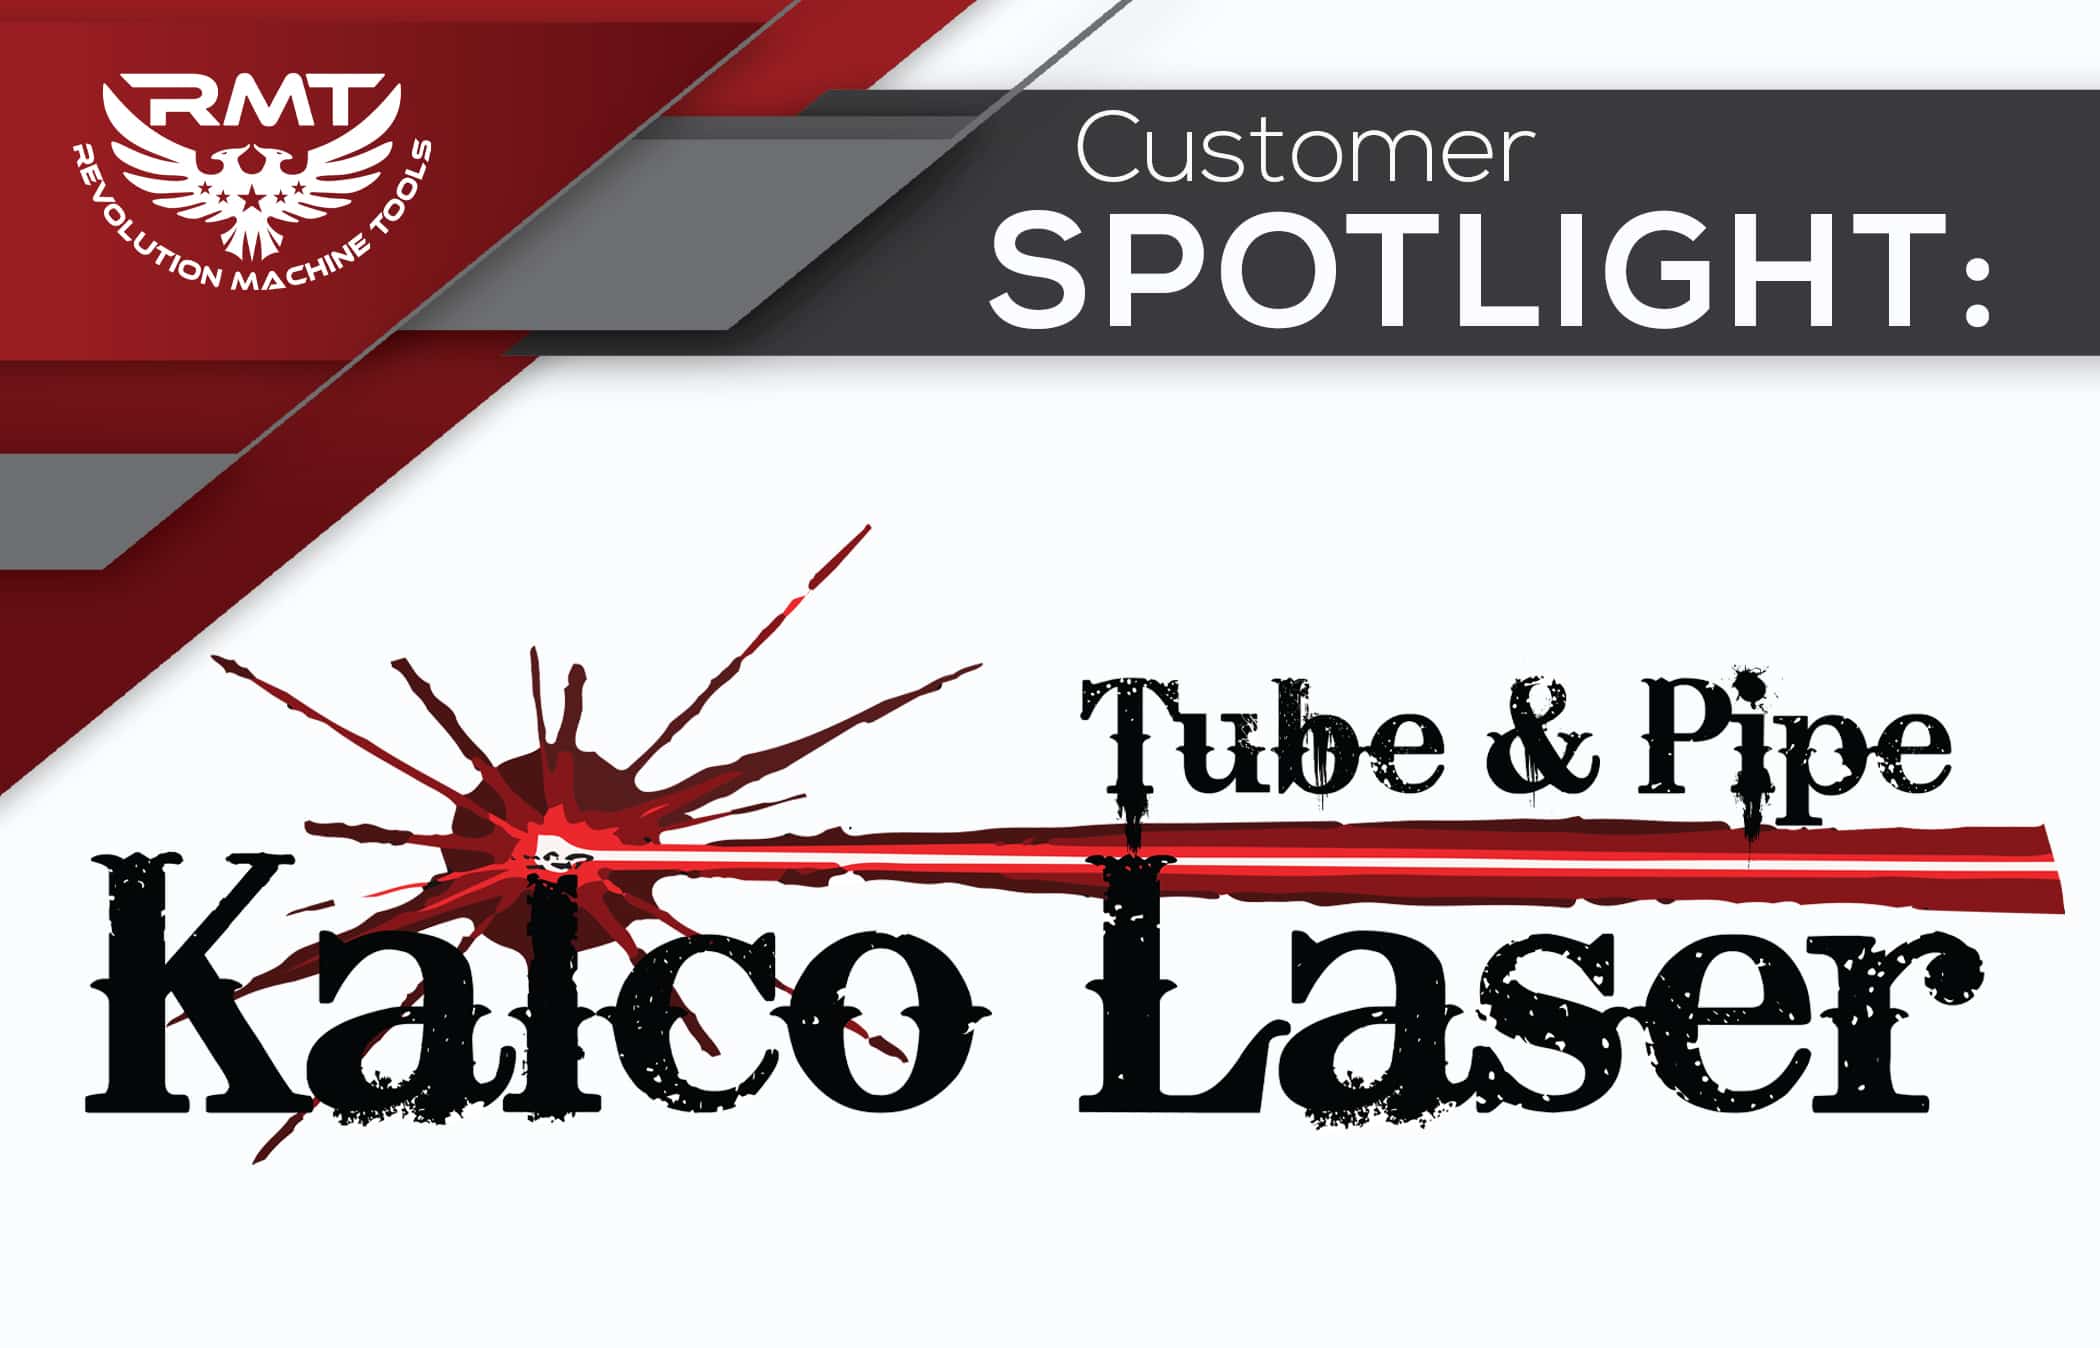 Customer Spotlight on Kalco Laser